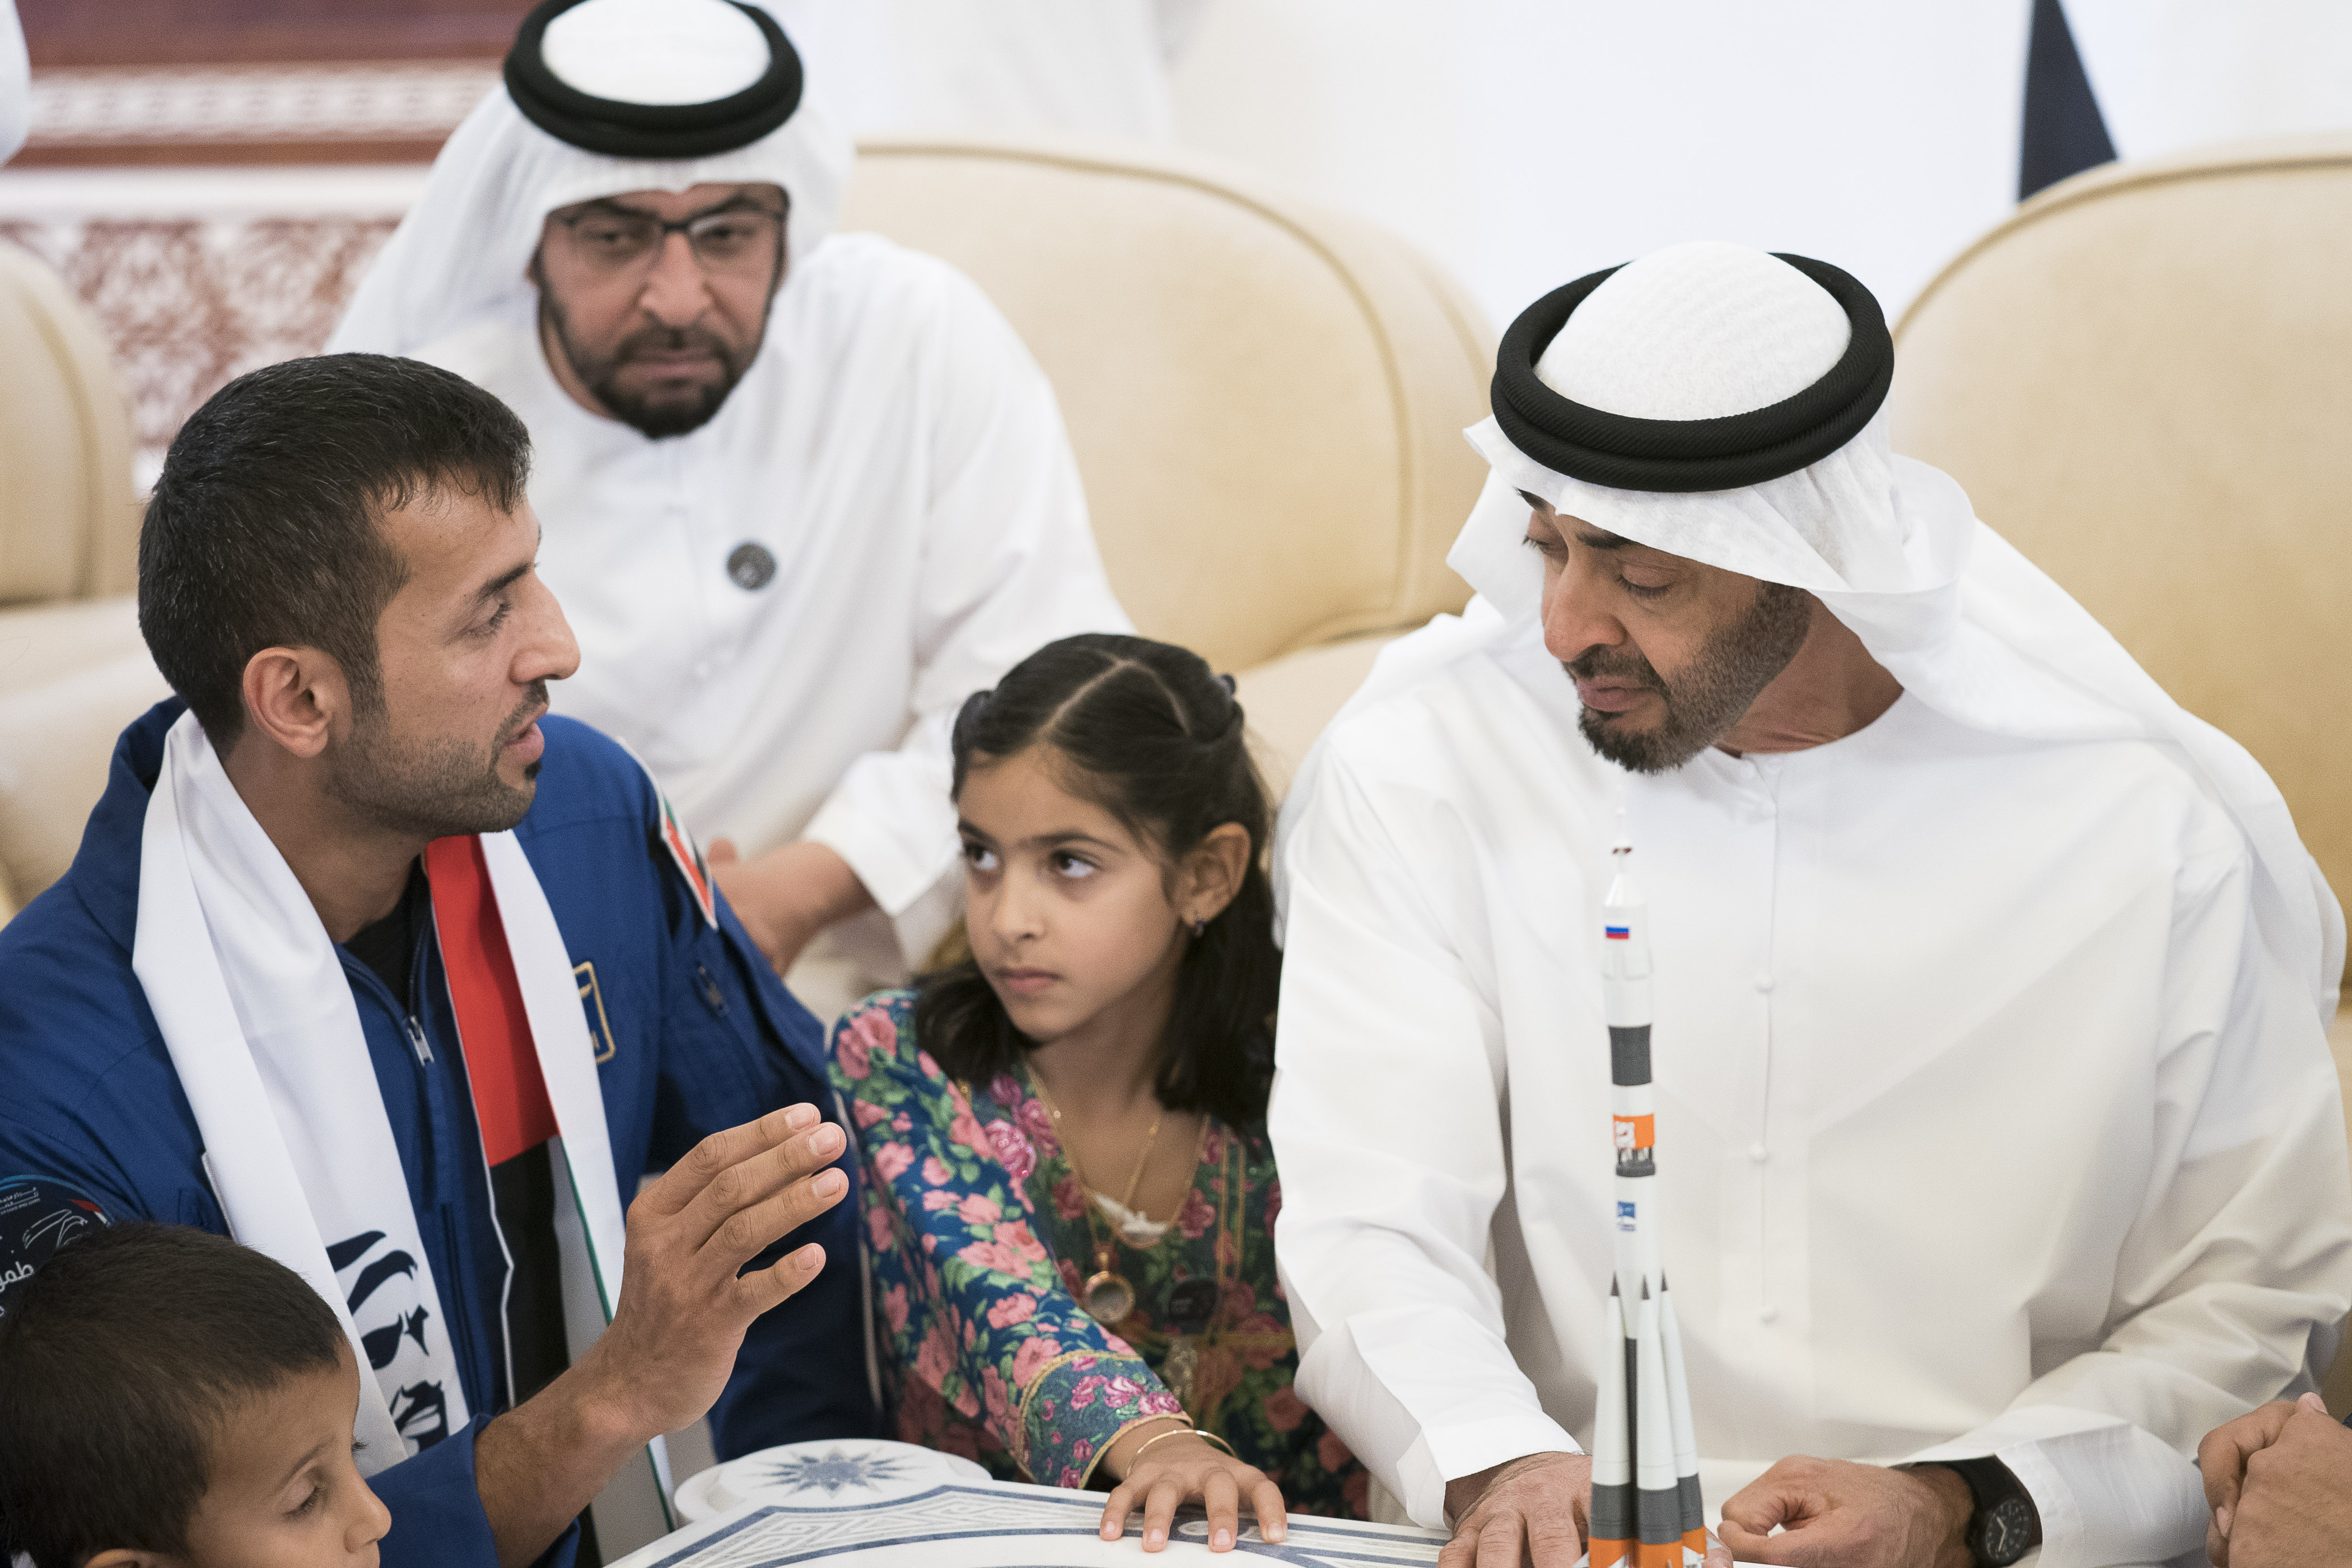 Sultan Al Neyadi will take Emirati dreams into space